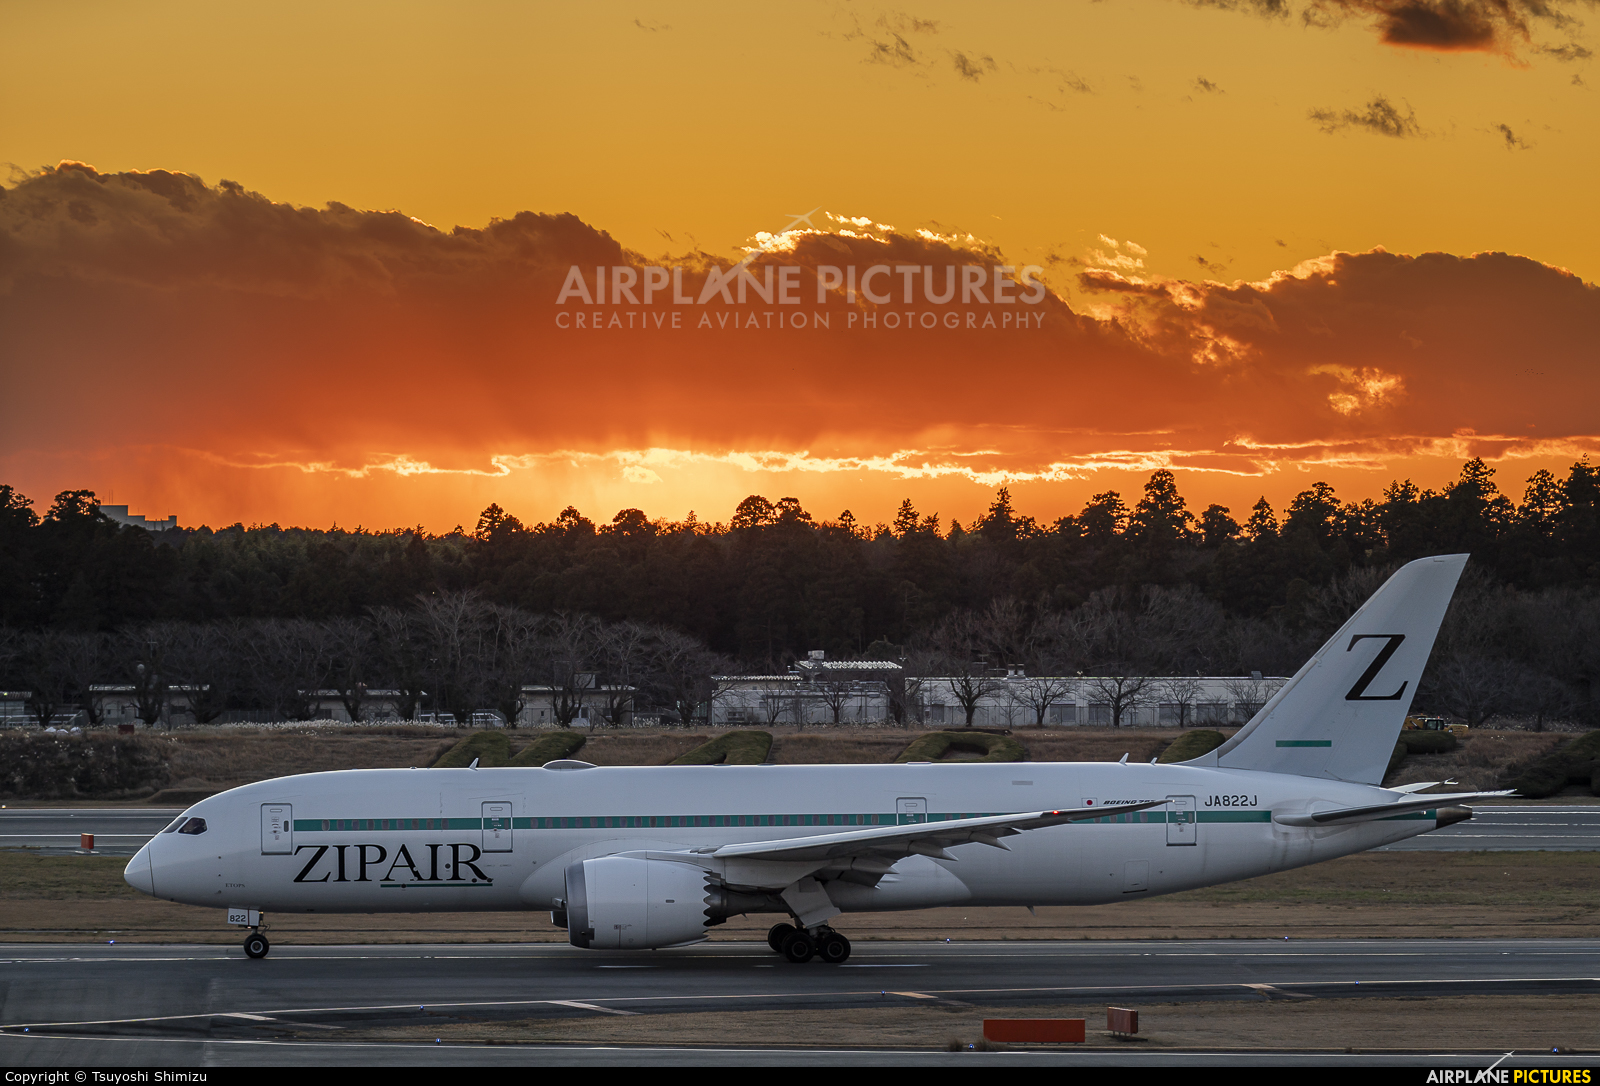 ZIPAIR Tokyo JA822J aircraft at Tokyo - Narita Intl